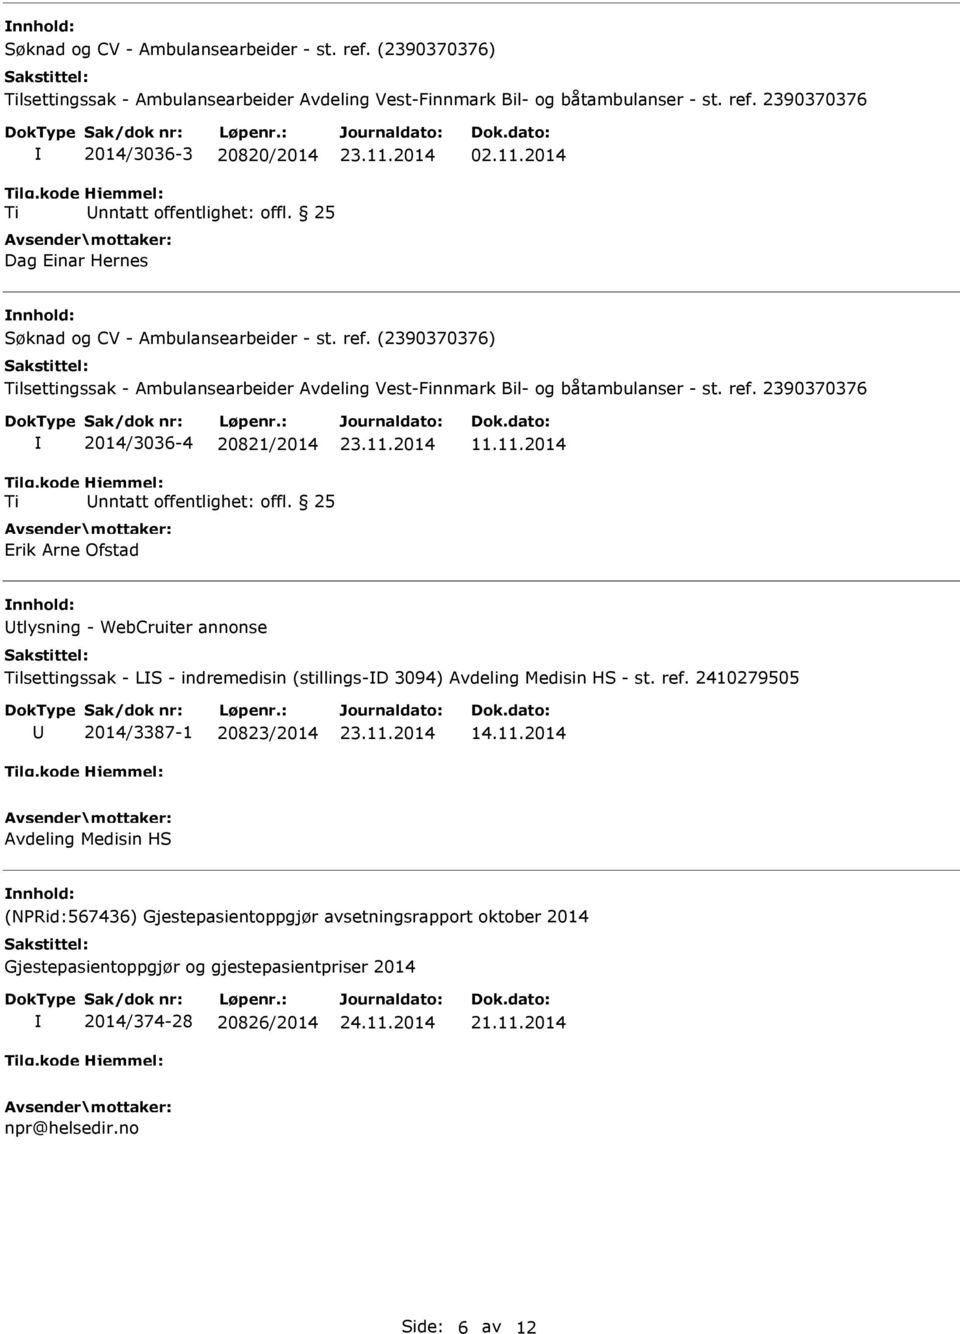 25 Erik Arne Ofstad 23.11.2014 11.11.2014 tlysning - WebCruiter annonse Tilsettingssak - LS - indremedisin (stillings-d 3094) Avdeling Medisin HS - st. ref. 2410279505 2014/3387-1 20823/2014 23.11.2014 14.